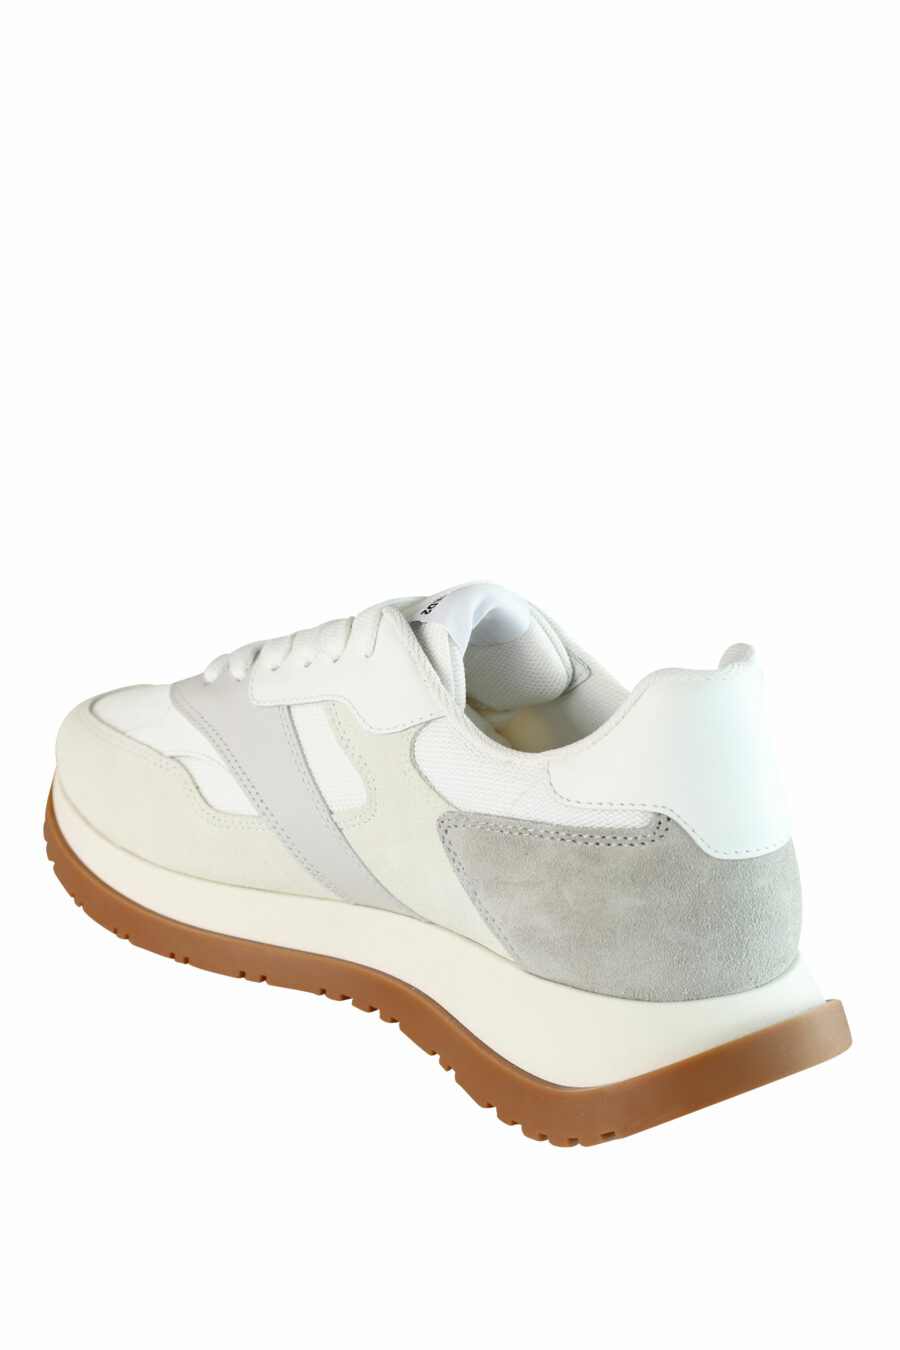 Zapatillas blancas "running" con detalles grises y beige - IMG 1400